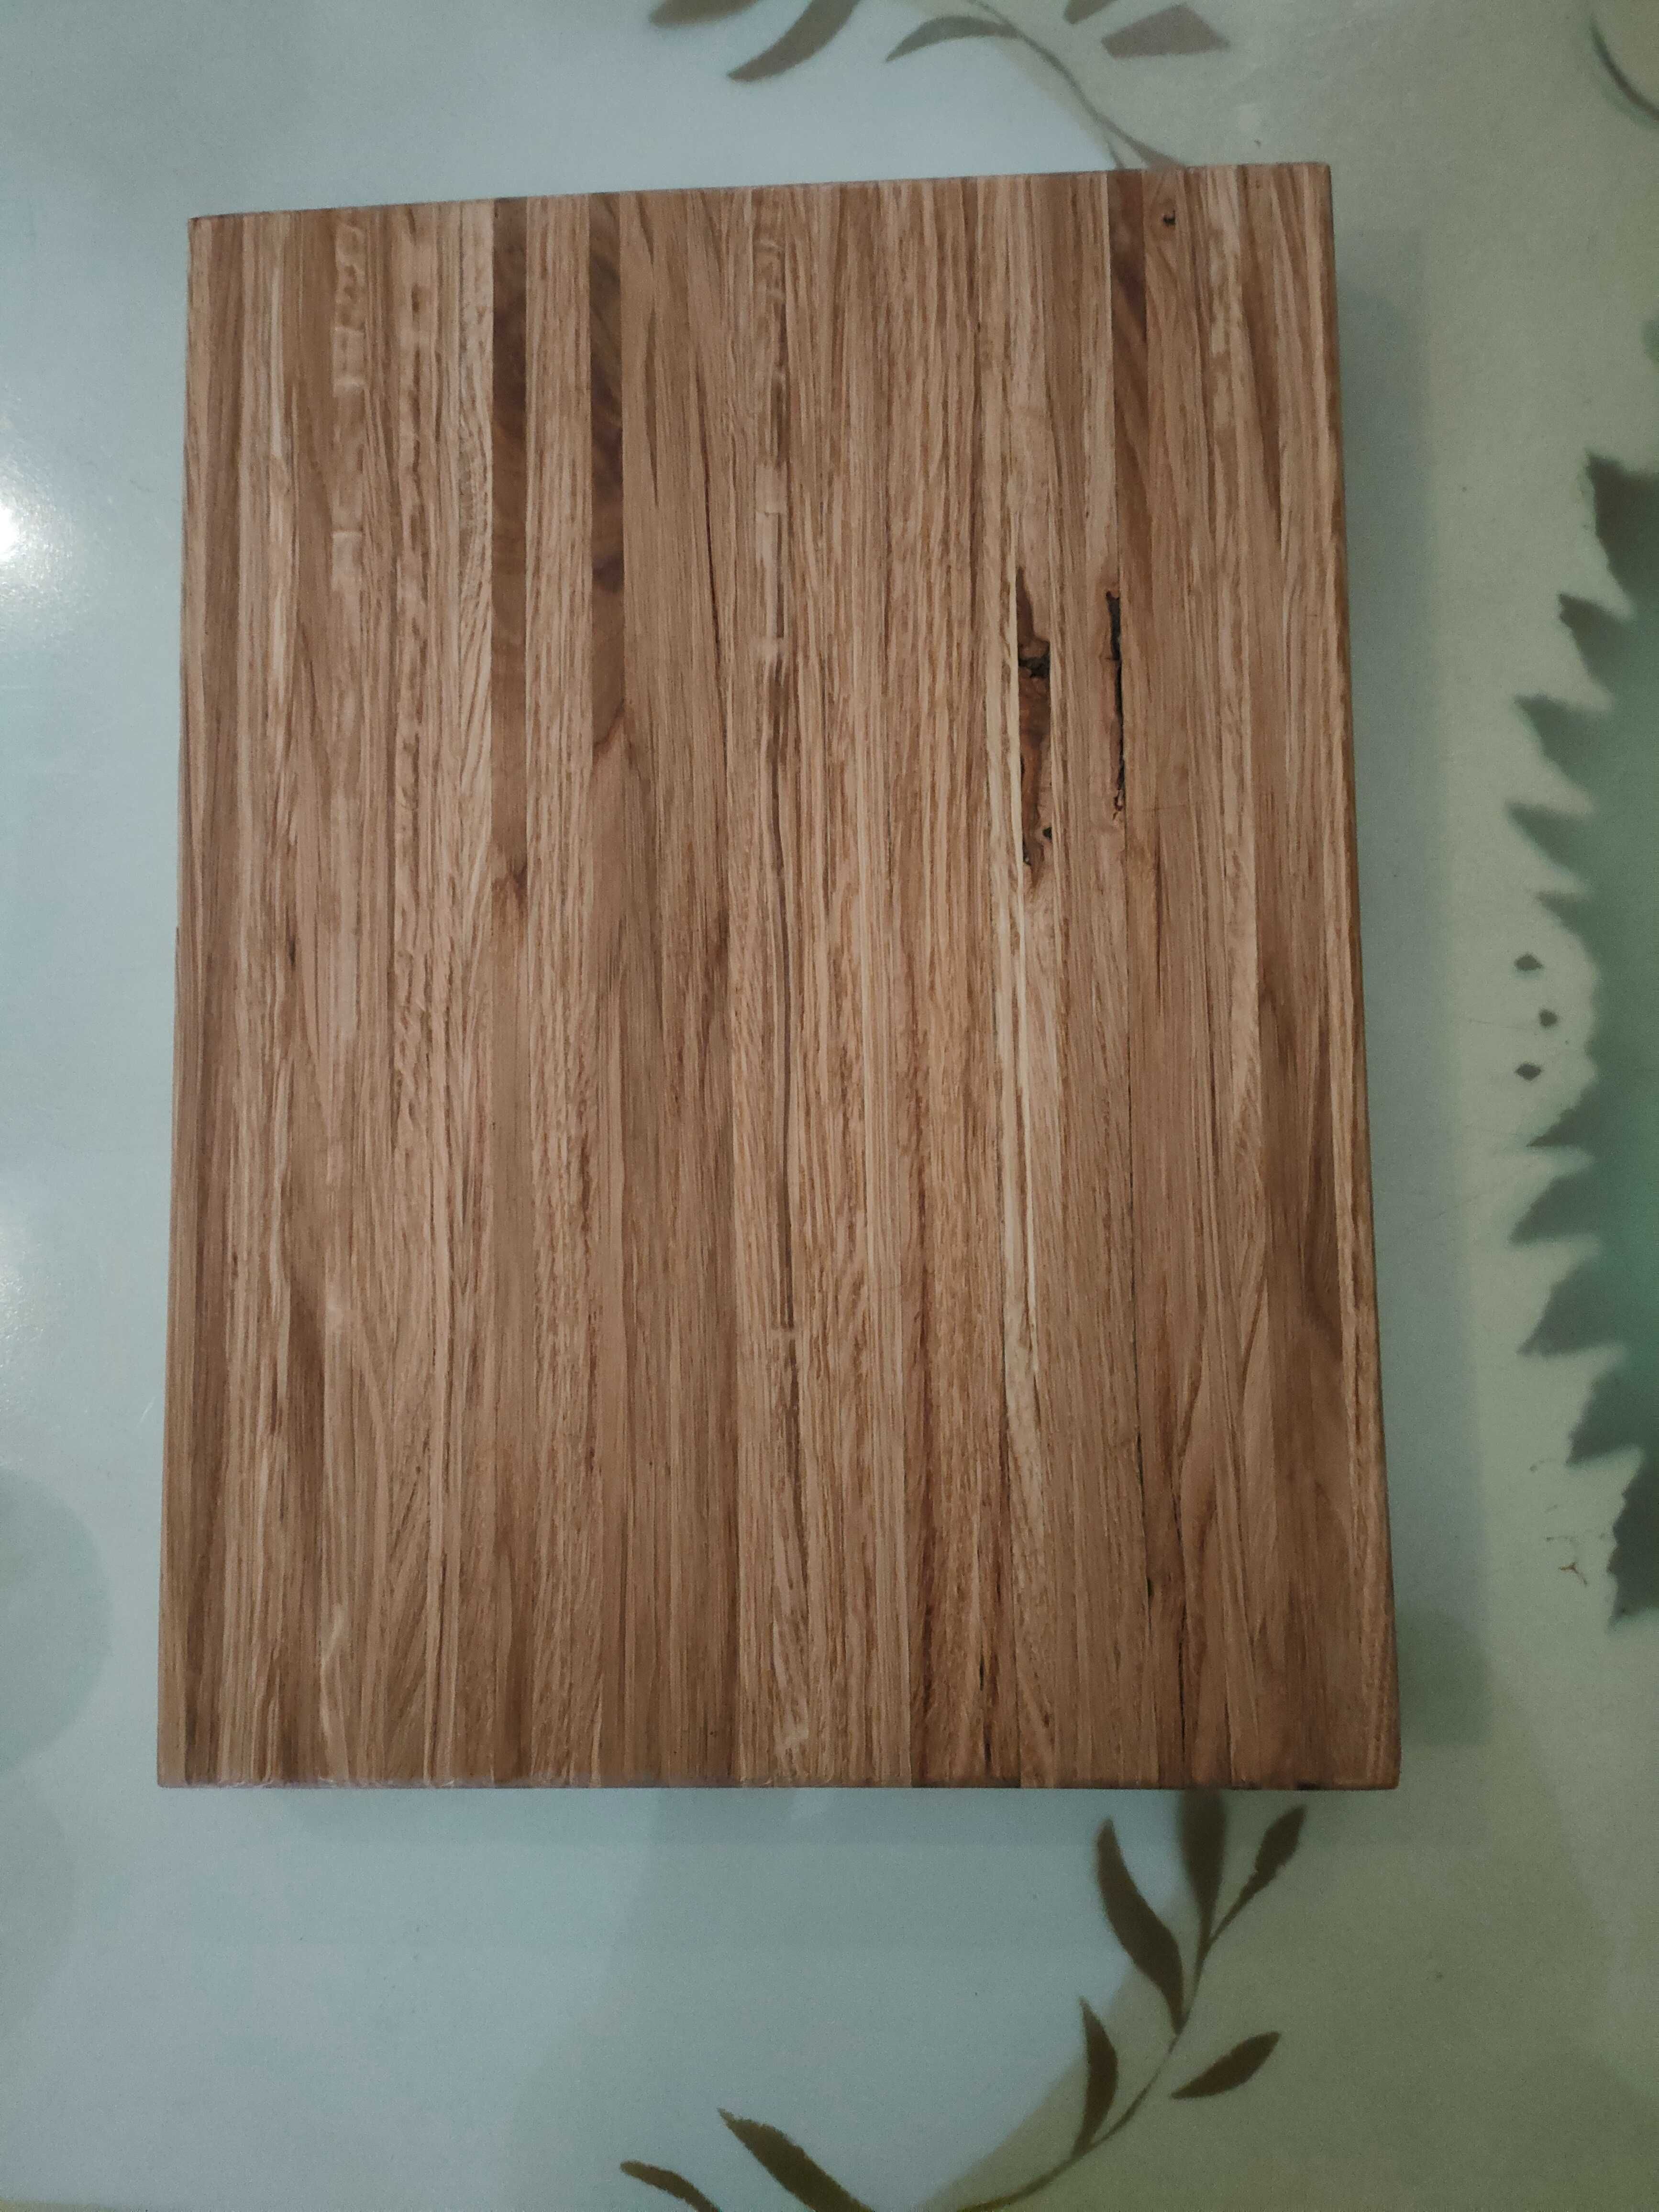 DESKA DĘBOWA blok do krojenia, drewniana deska kuchenna 40x30x4 CM.